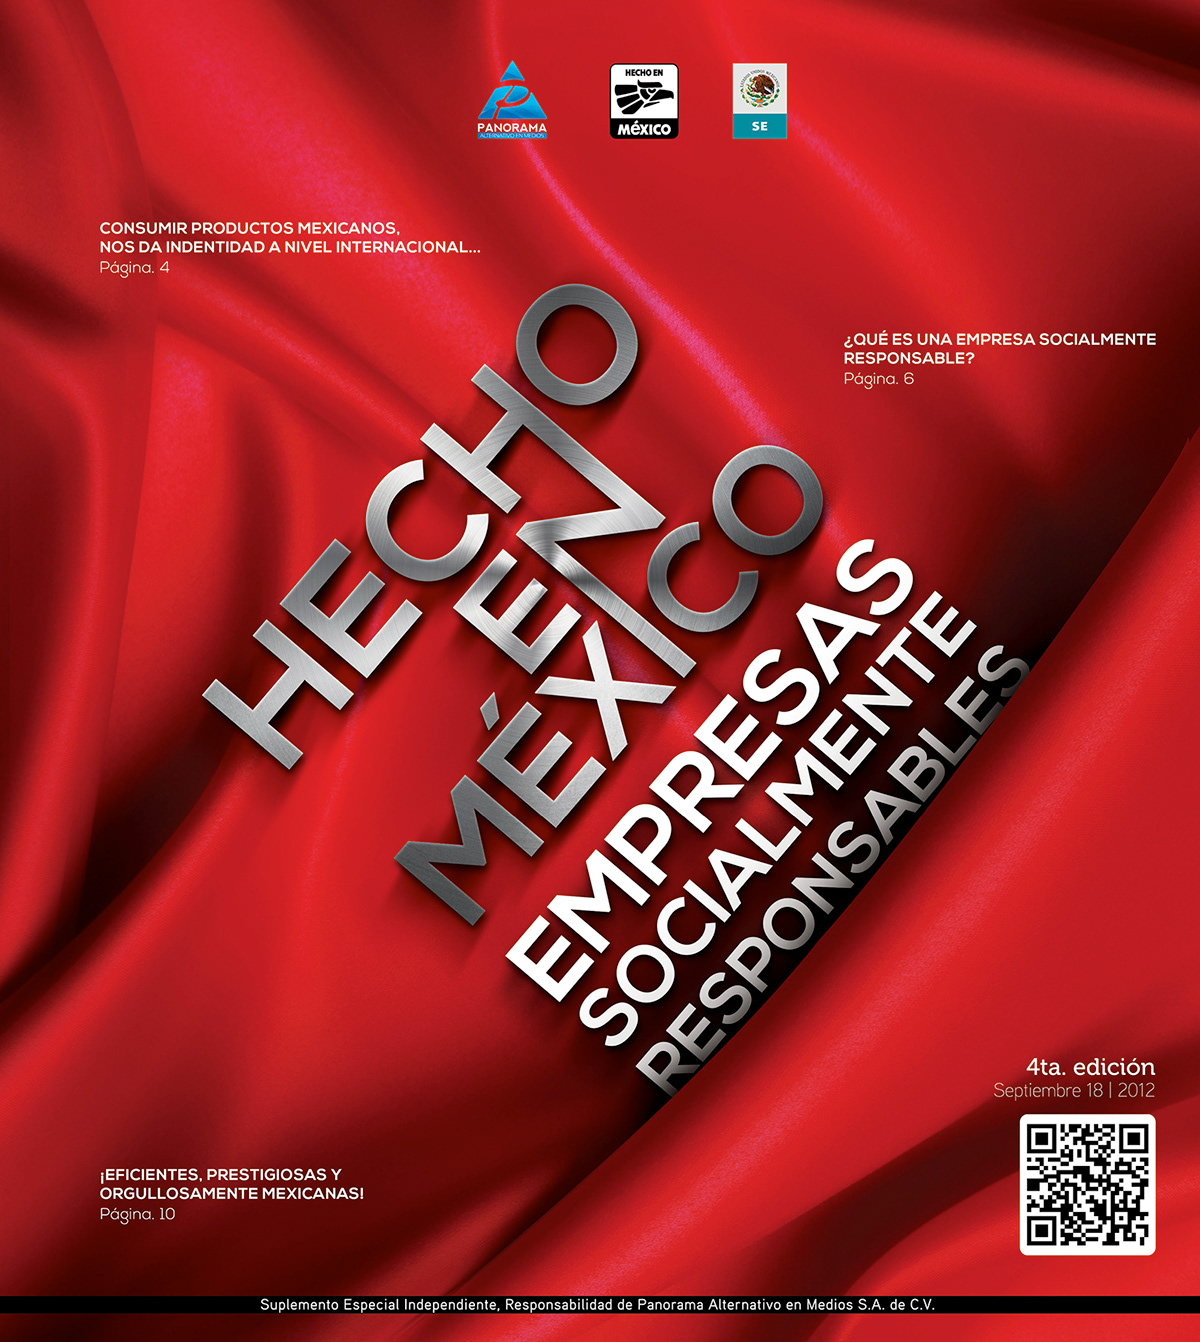 mexico hecho en mexico magazine revista editorial design